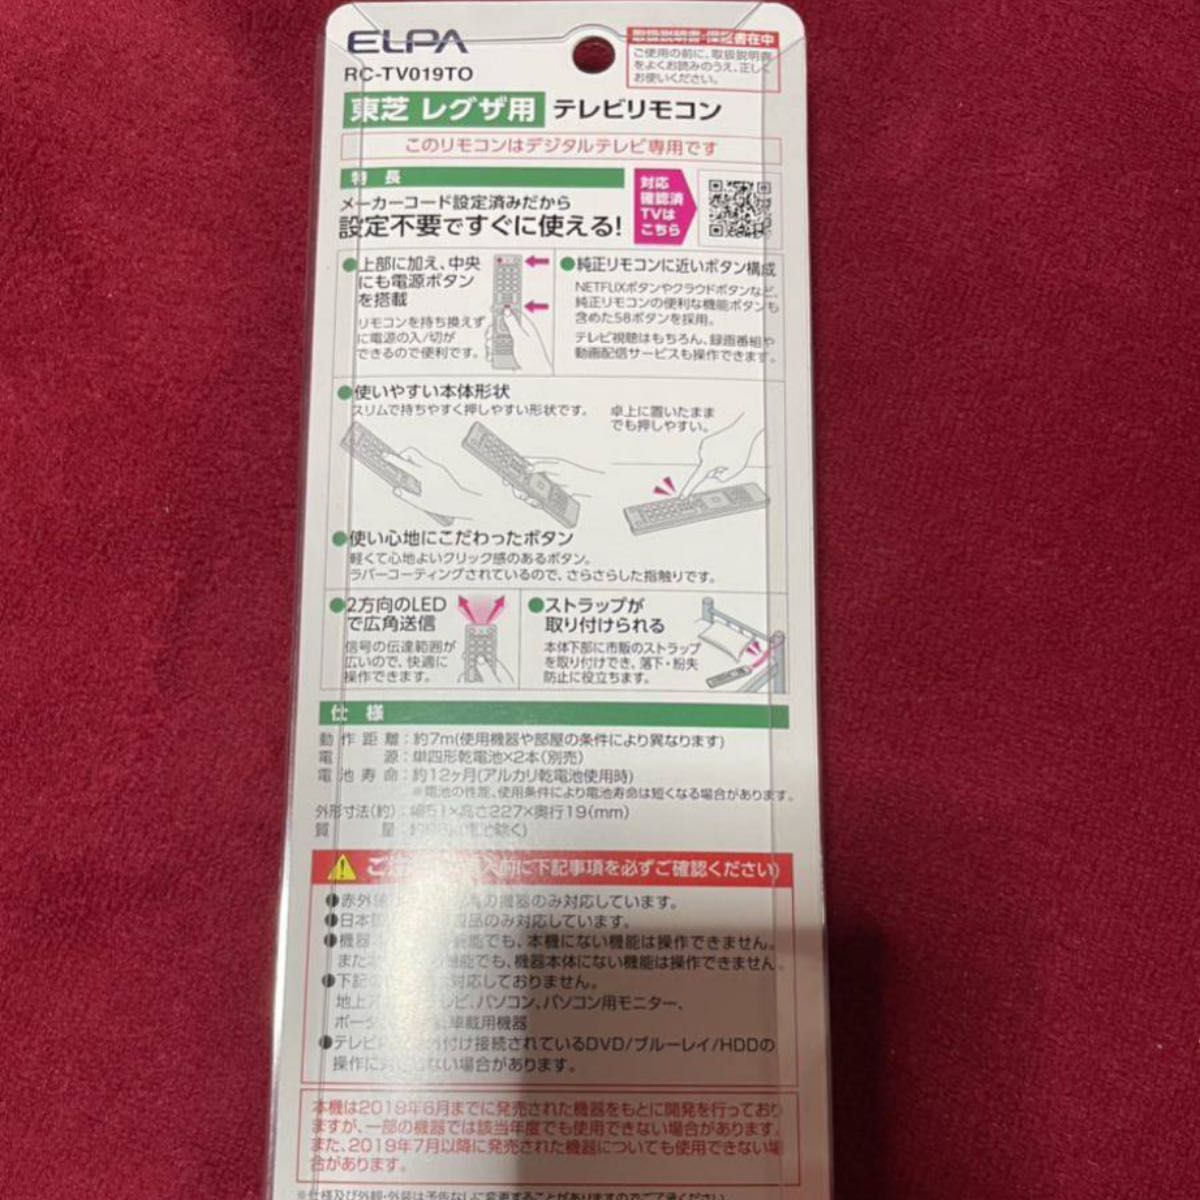 東芝 REGZA レグザ用 テレビリモコン ELPA 朝日電器株式会社 RC-TV019TO 新品